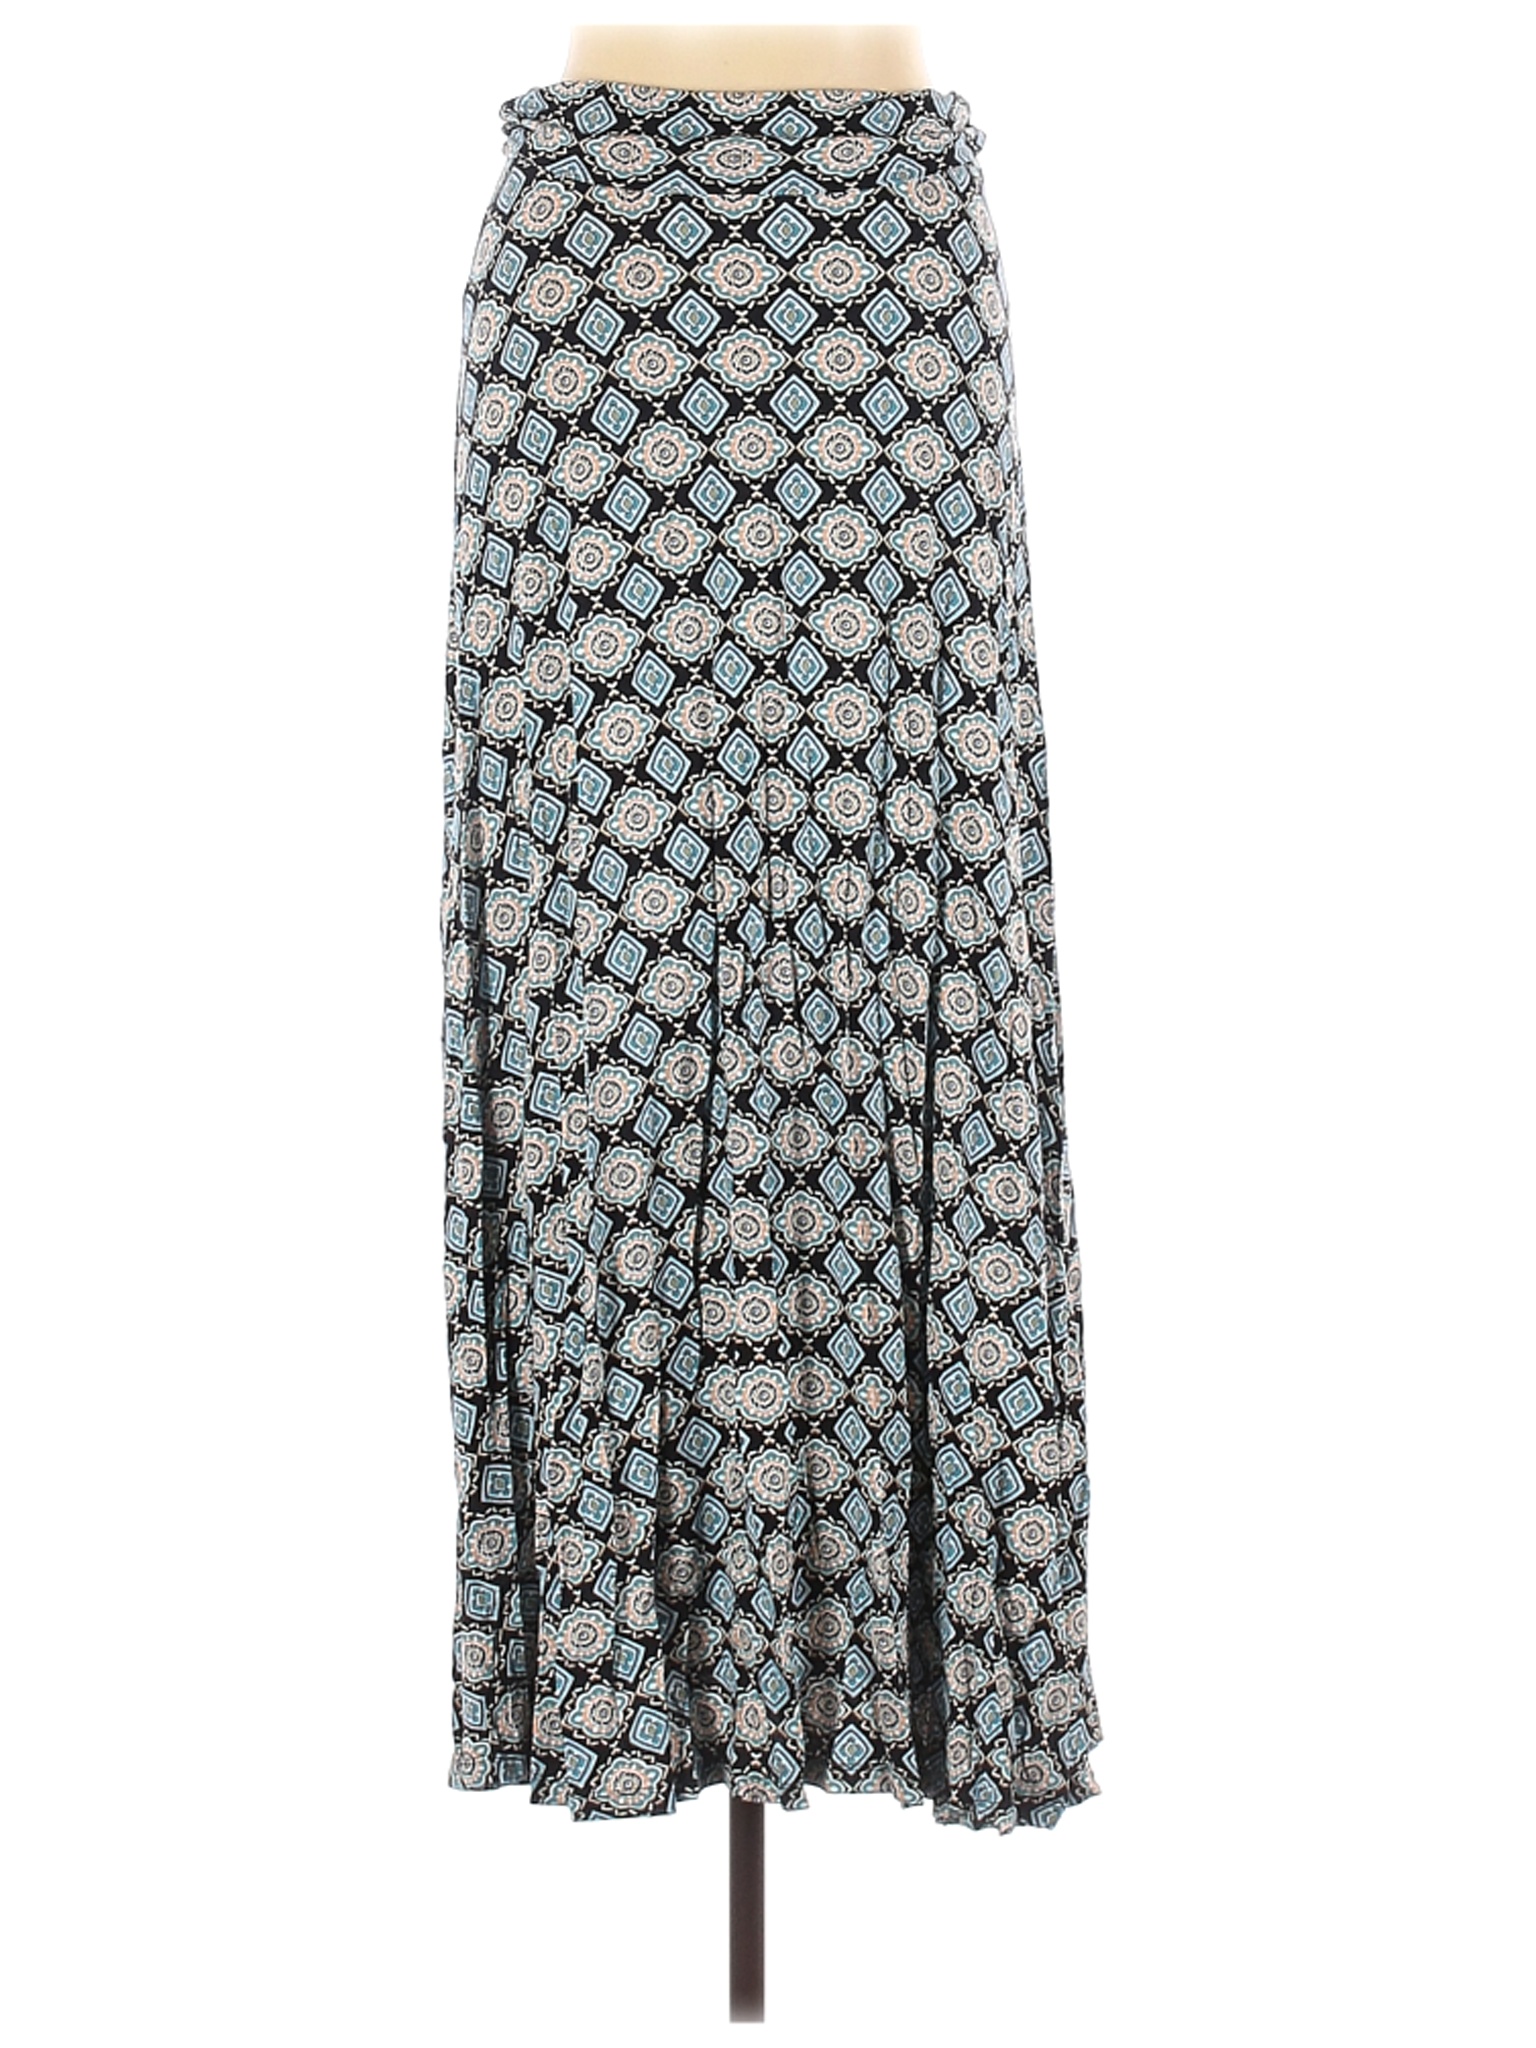 Gilli Women Blue Casual Skirt L | eBay